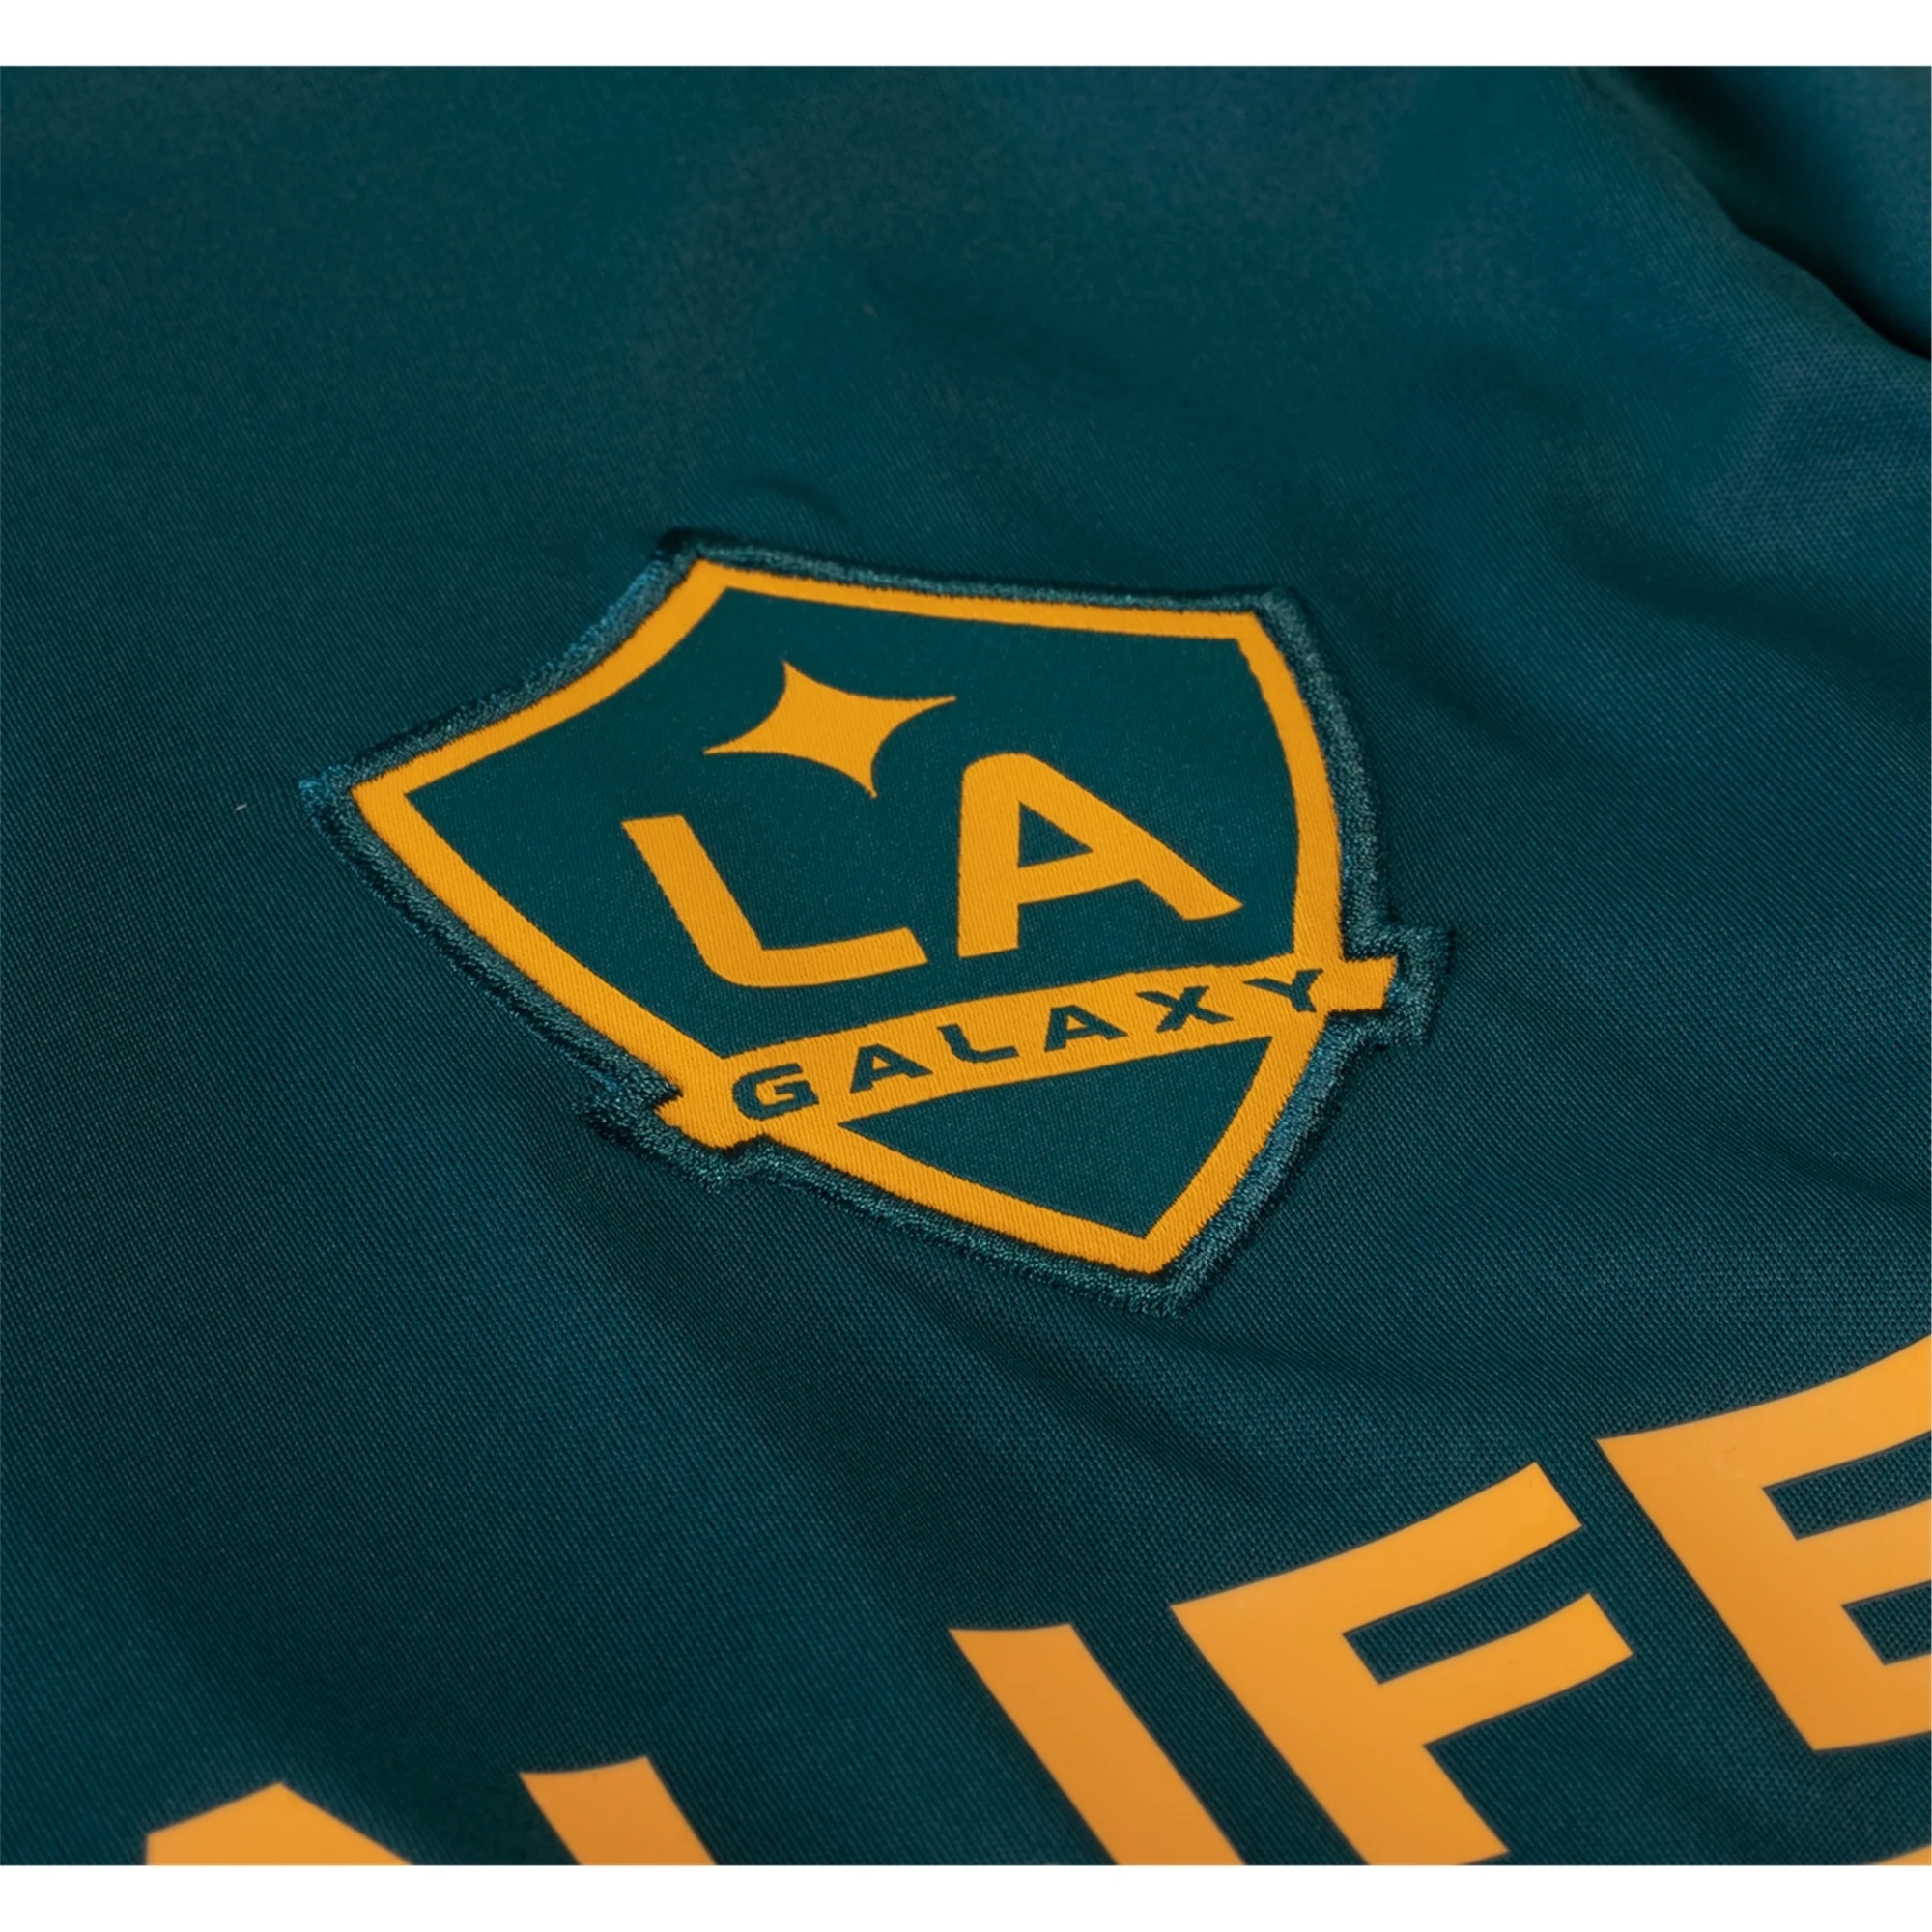 Voici le nouveau maillot du Los Angeles Galaxy (et ceux depuis